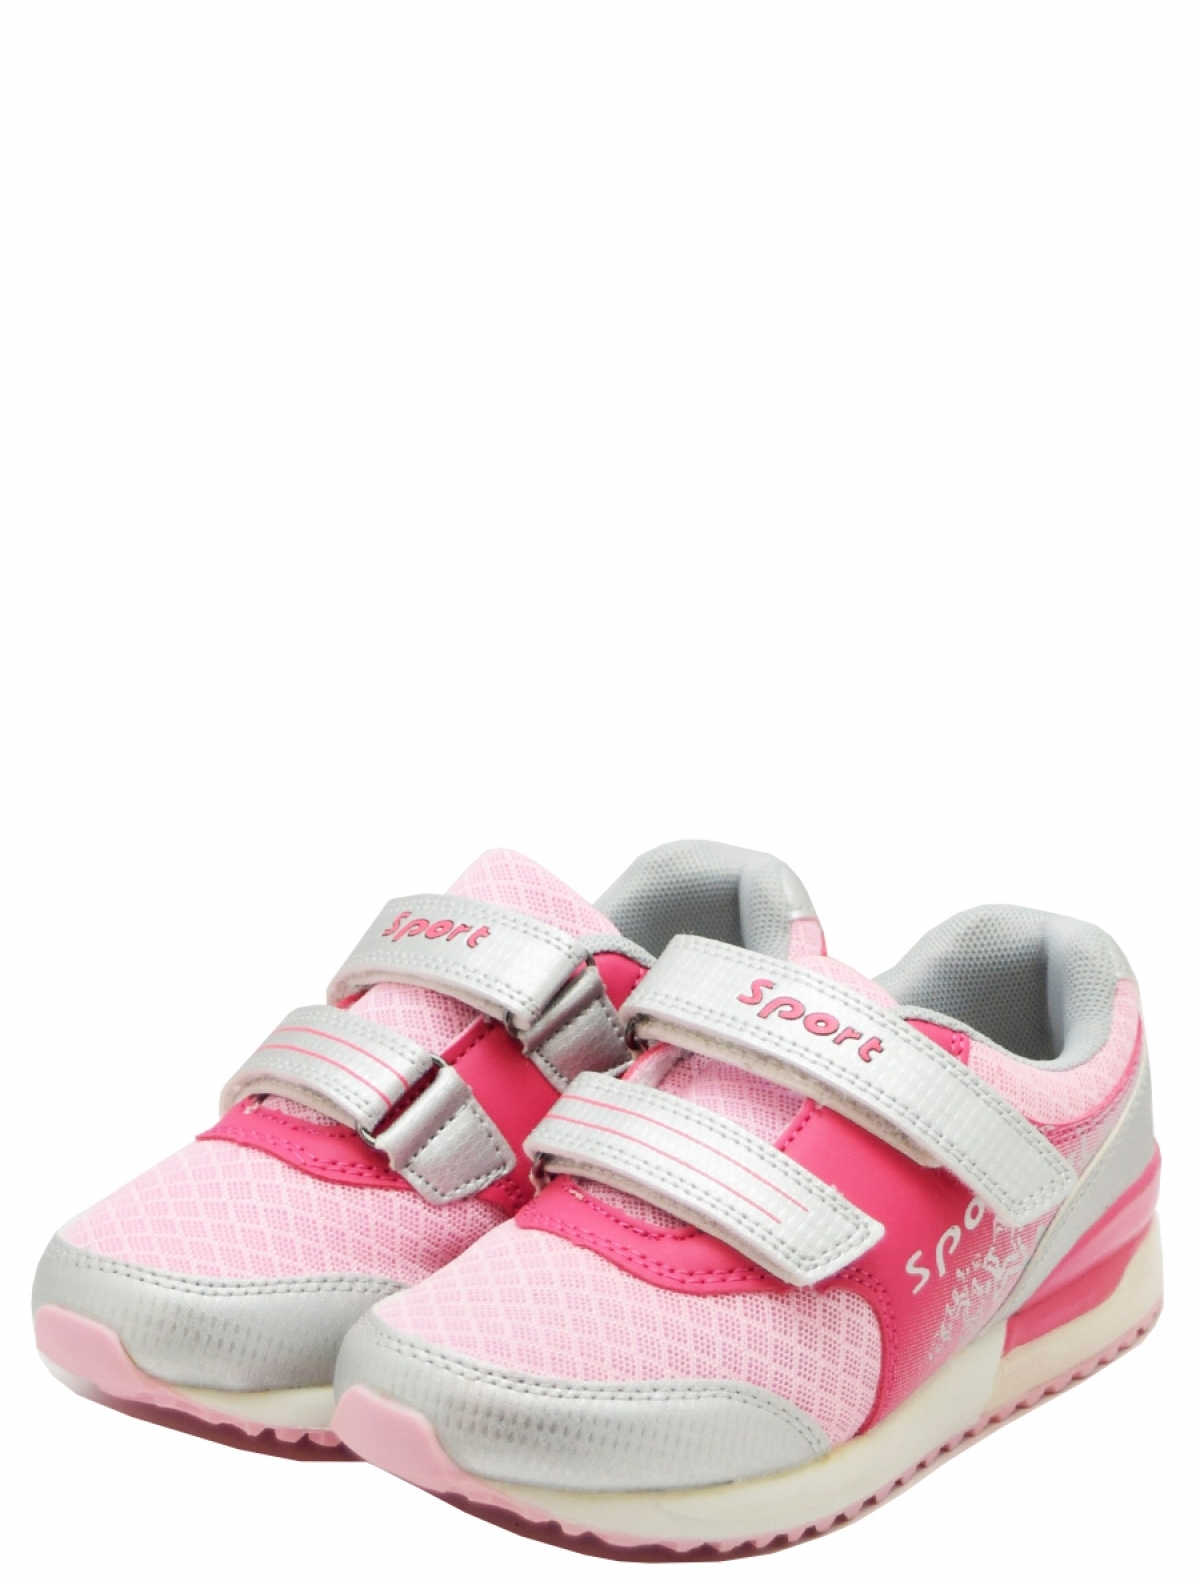 ES490031-1 кроссовки для девочки